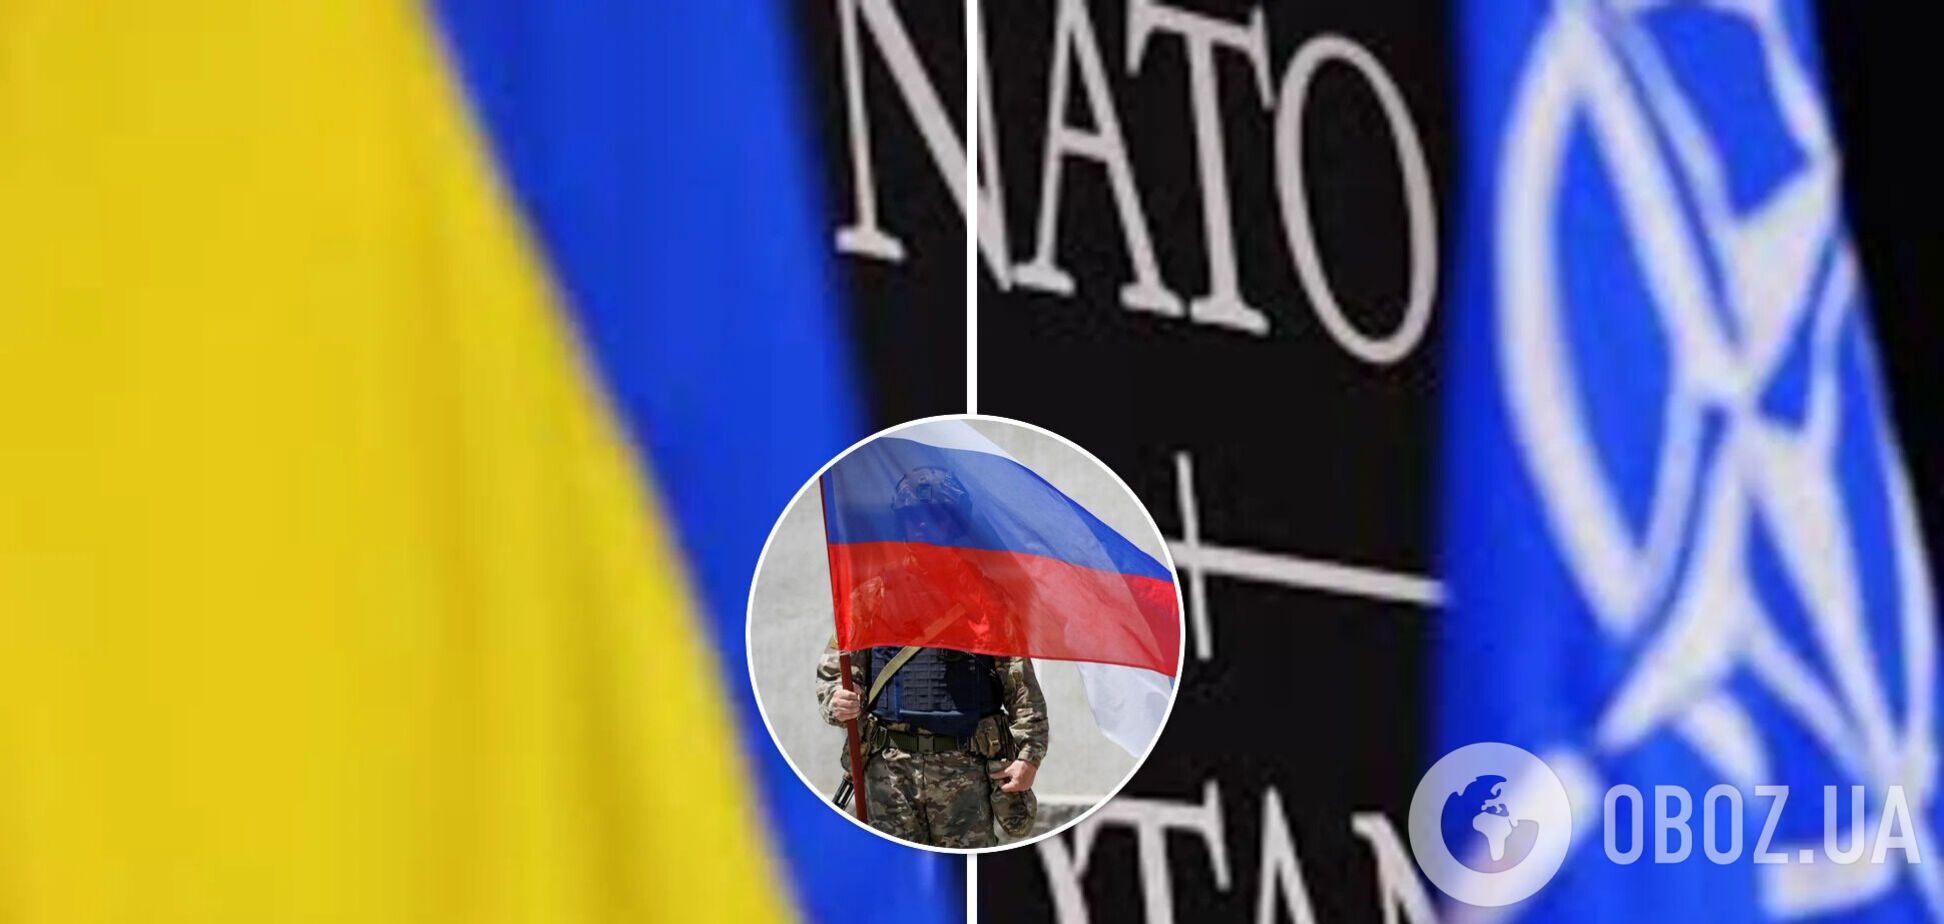 Членство Украины в НАТО